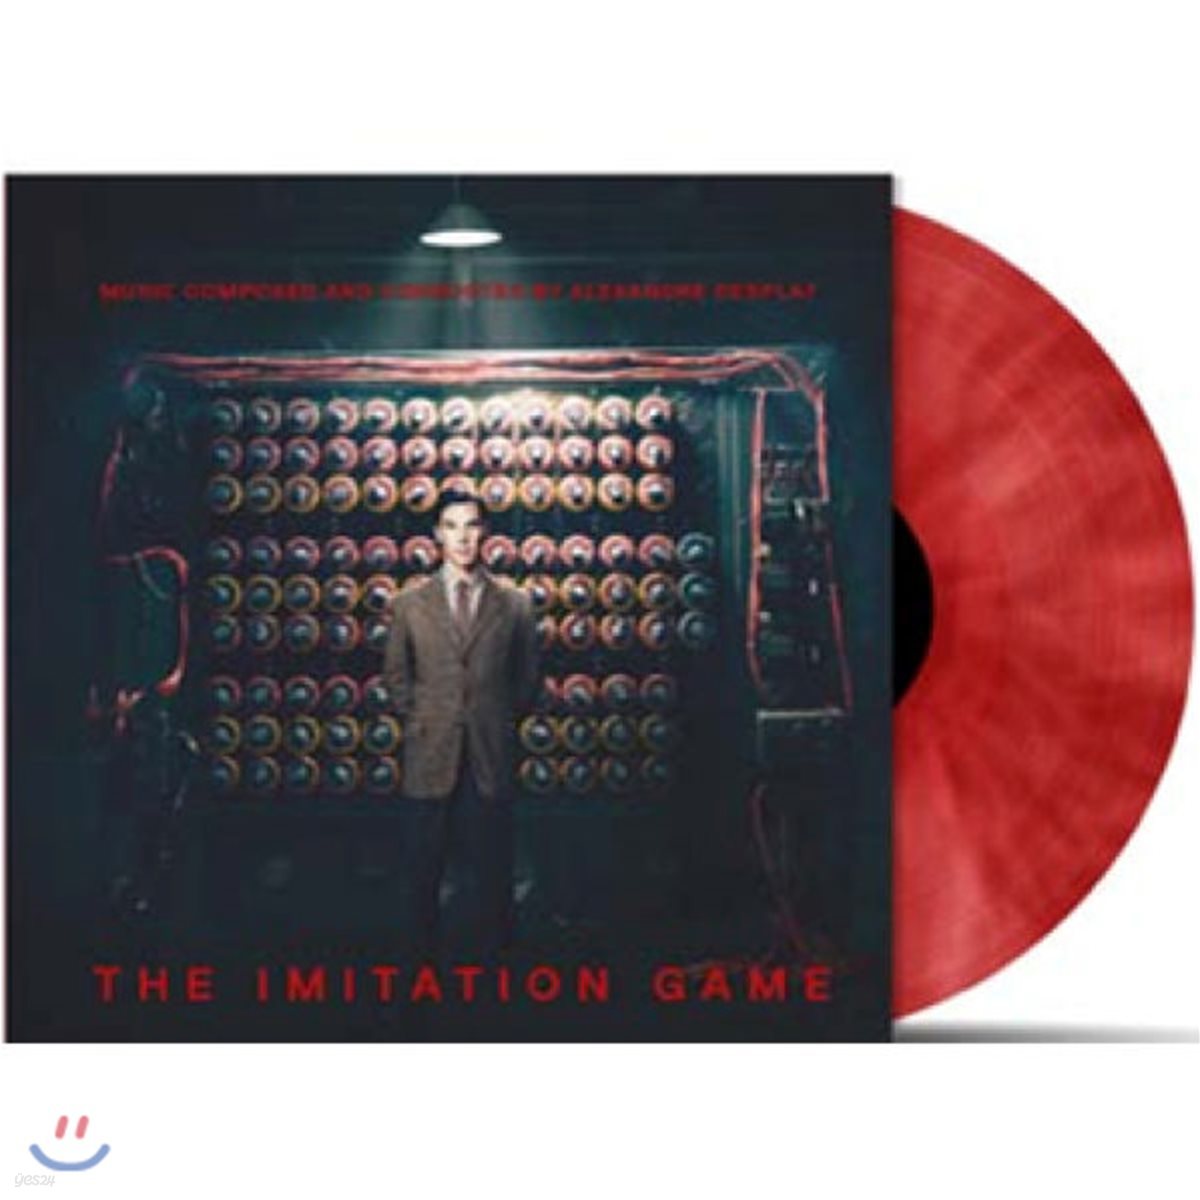 이미테이션 게임 영화음악 (The Imitation Game OST by Alexandre Desplat) [레드&화이트 컬러 LP]